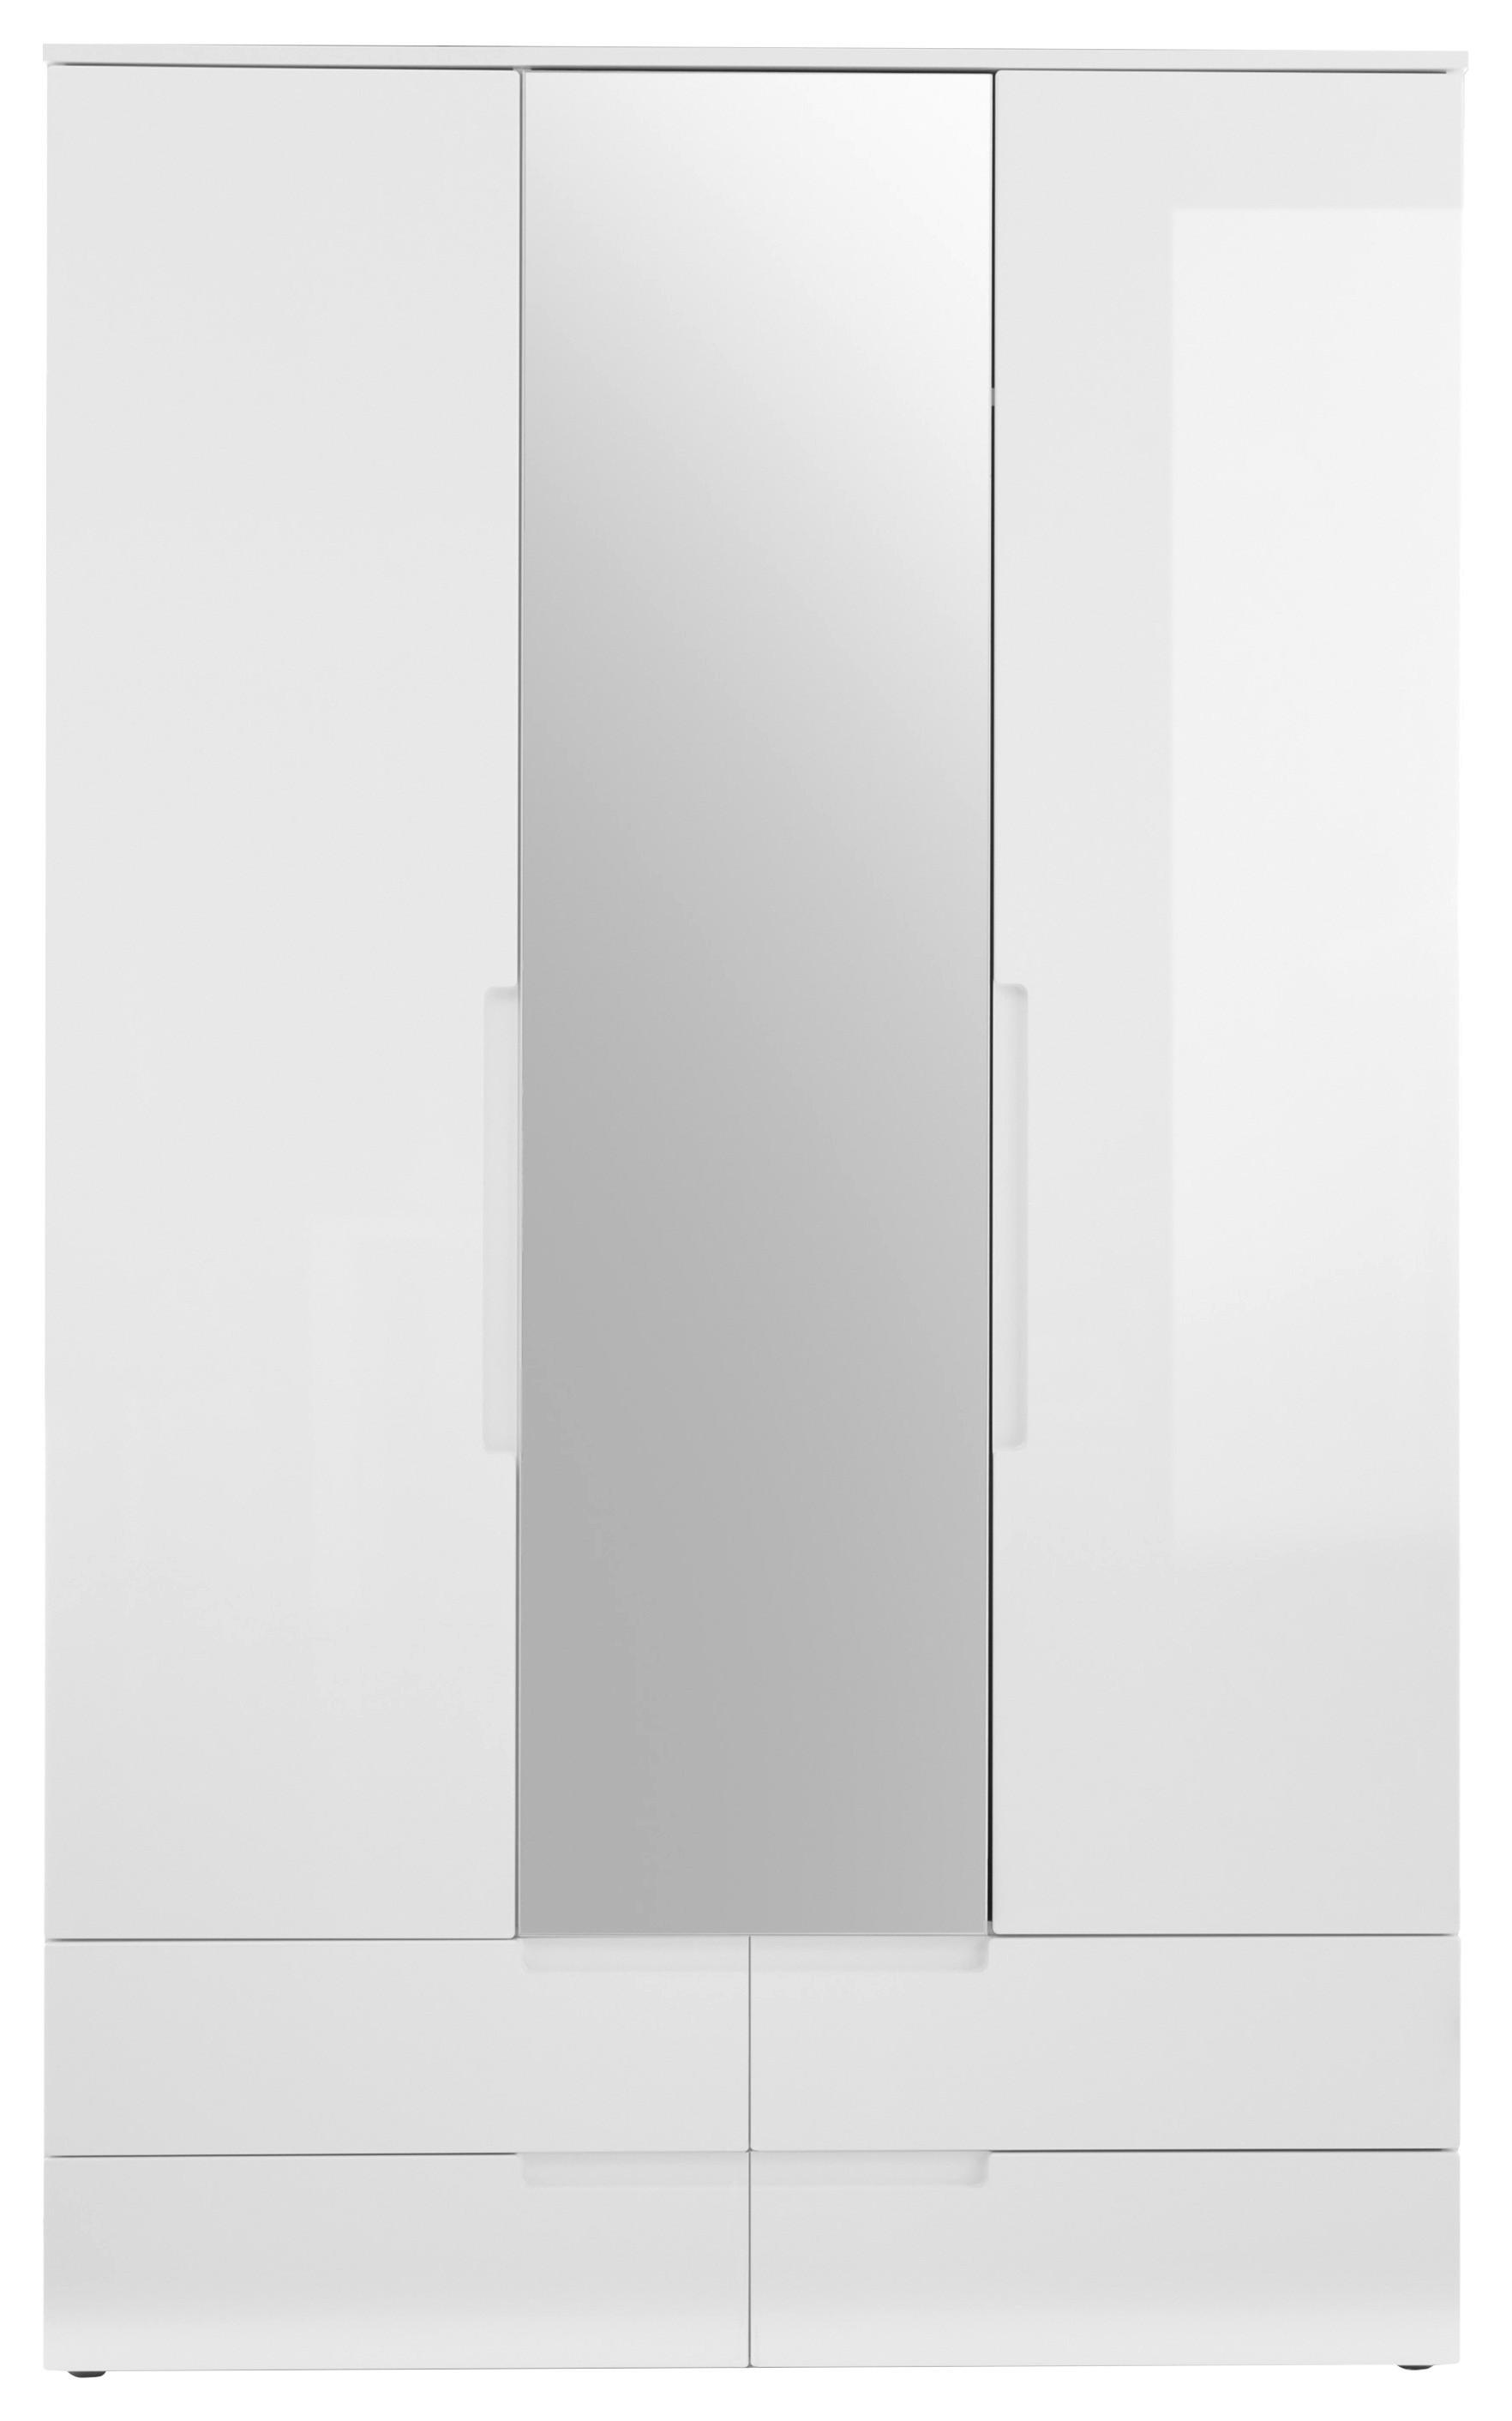 Skříň S Otočnými Dveřmi Fun - bílá/vysoce lesklá bílá, Konvenční, kompozitní dřevo/sklo (126/208/57cm) - Modern Living